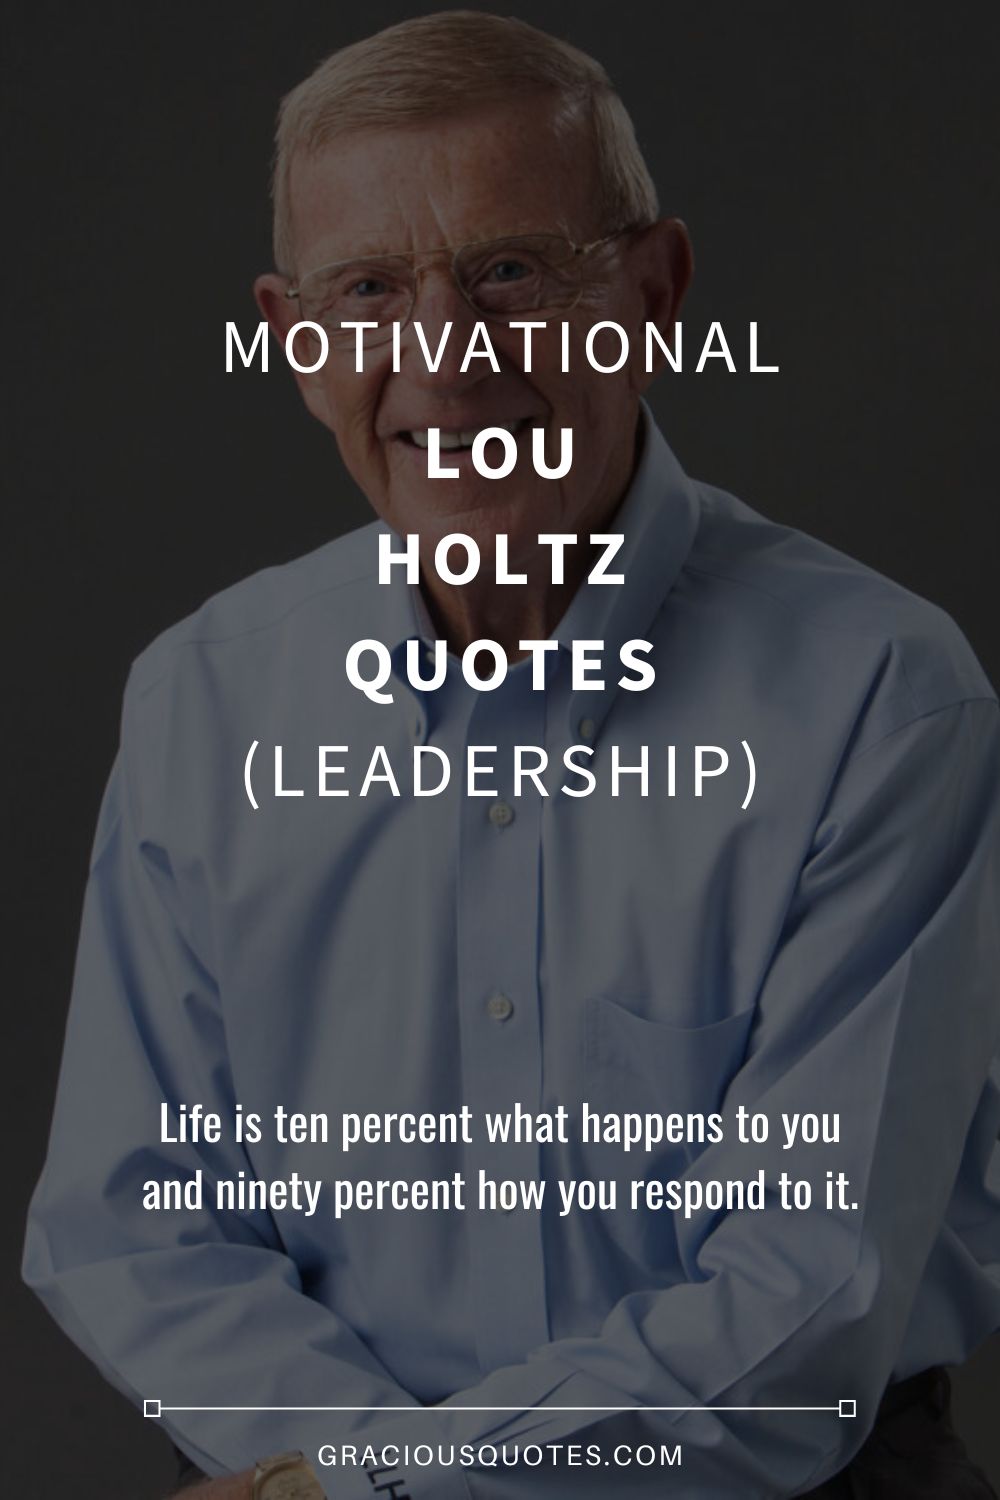 Motivational Lou Holtz Quotes (LEADERSHIP) - Gracious Quotes